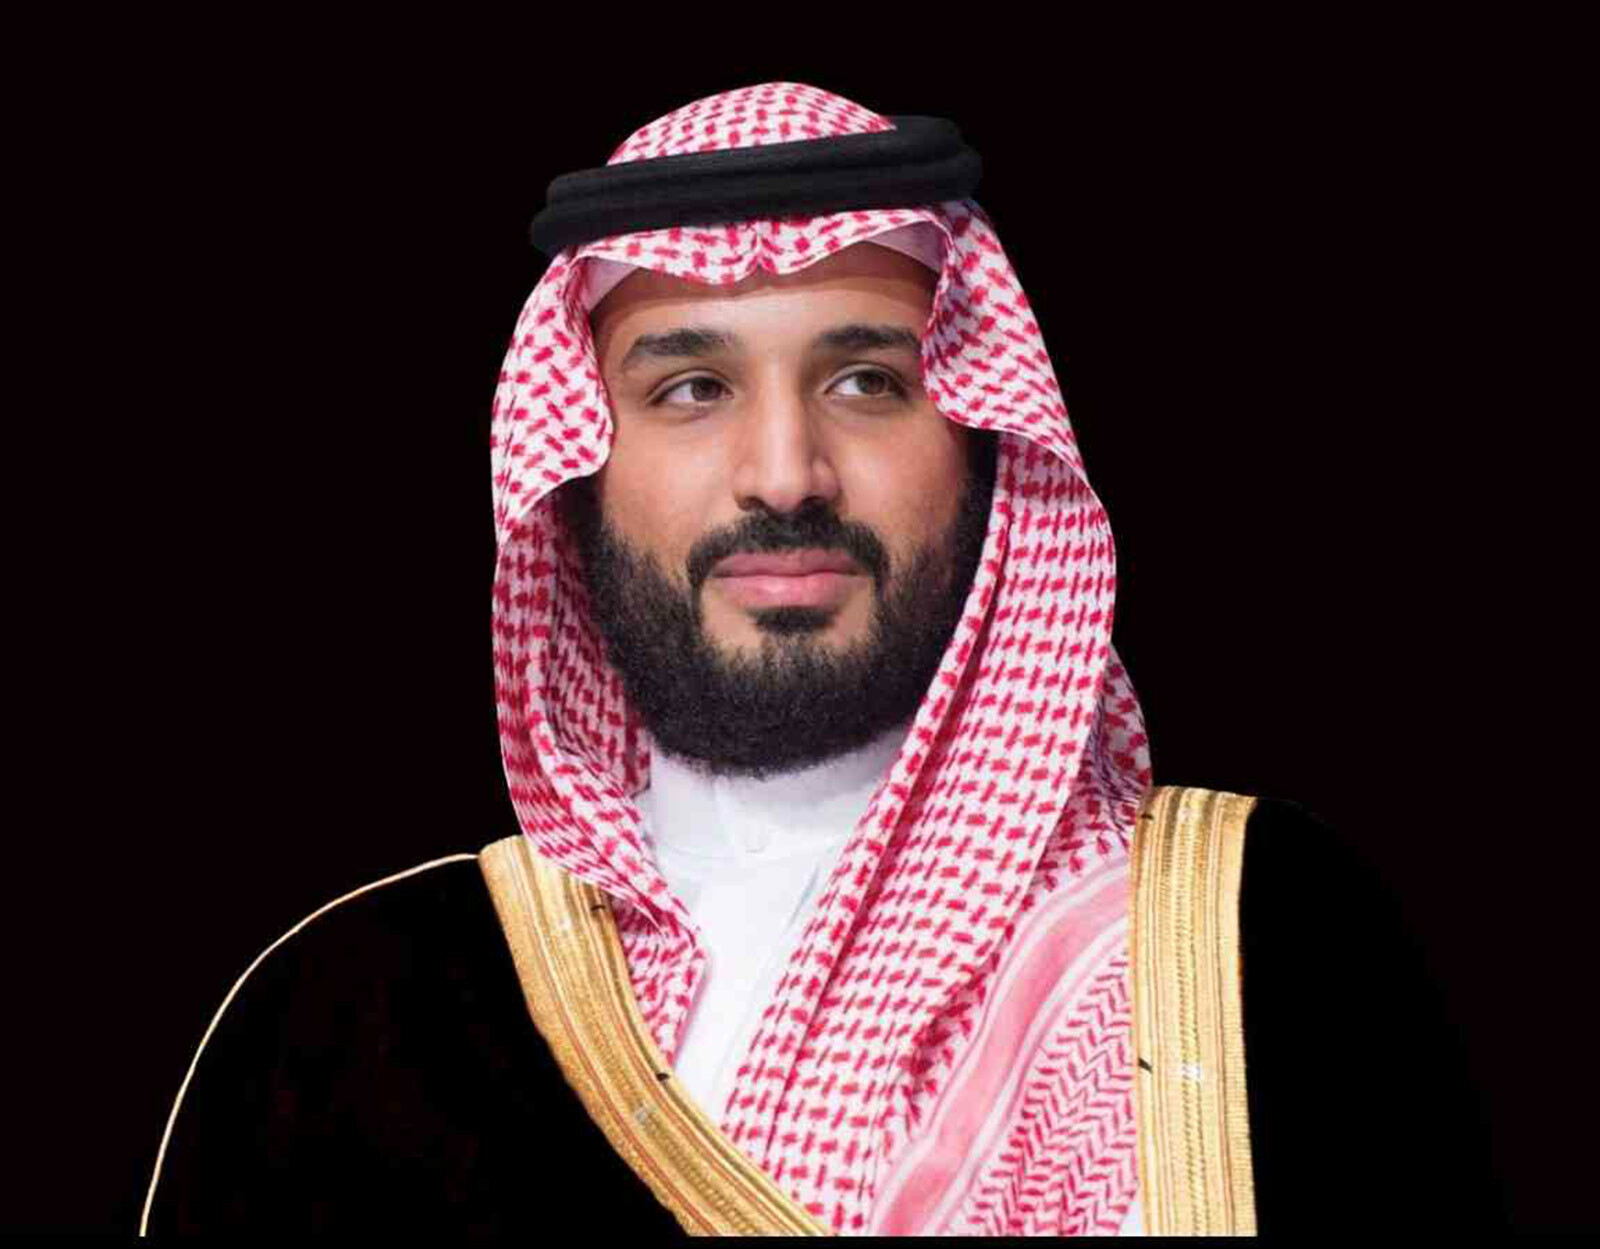 الأمير محمد بن سلمان يطلق مبادرة ستجذب 40 مليار ريال سعودي 